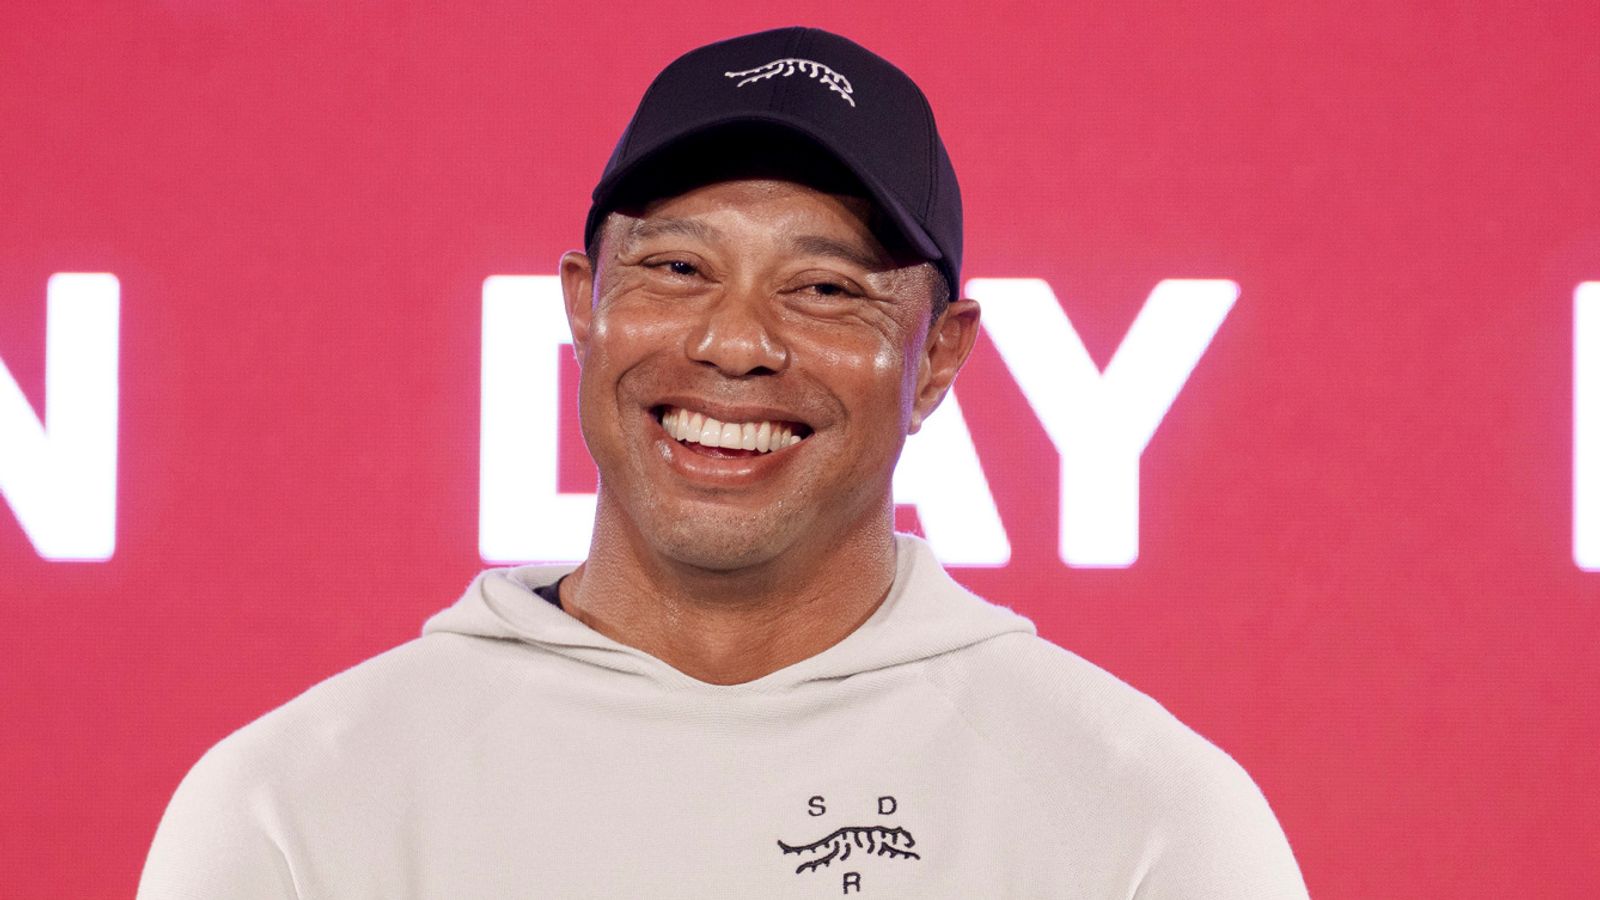 Tiger Woods lance la ligne de vêtements et de chaussures « Sun Day Red » dans le cadre d'un partenariat avec TaylorMade après avoir changé de Nike |  Actualités golfiques